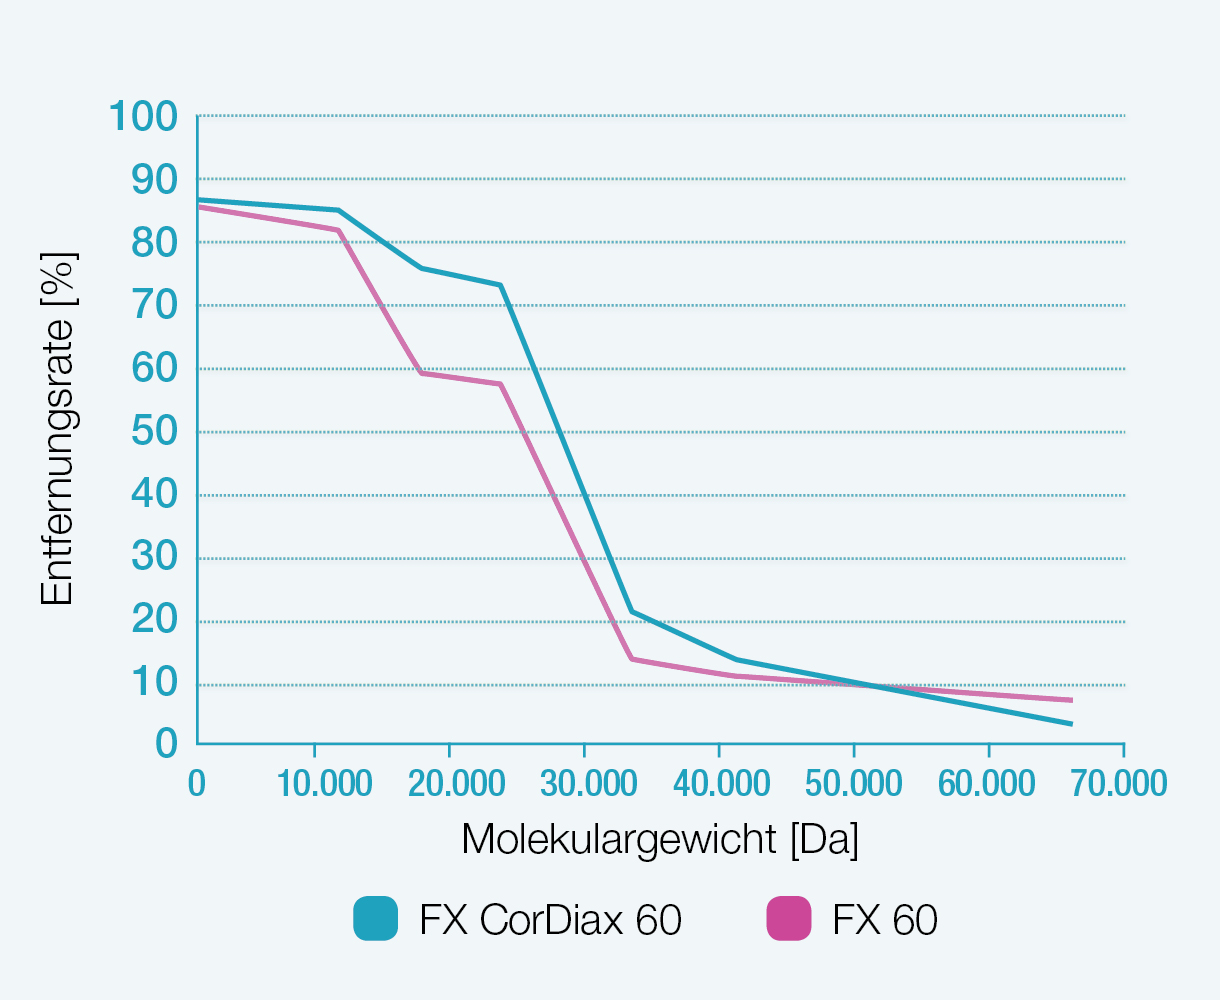 Entfernungsraten der Dialysatoren FX 60 und FX CorDiax 60